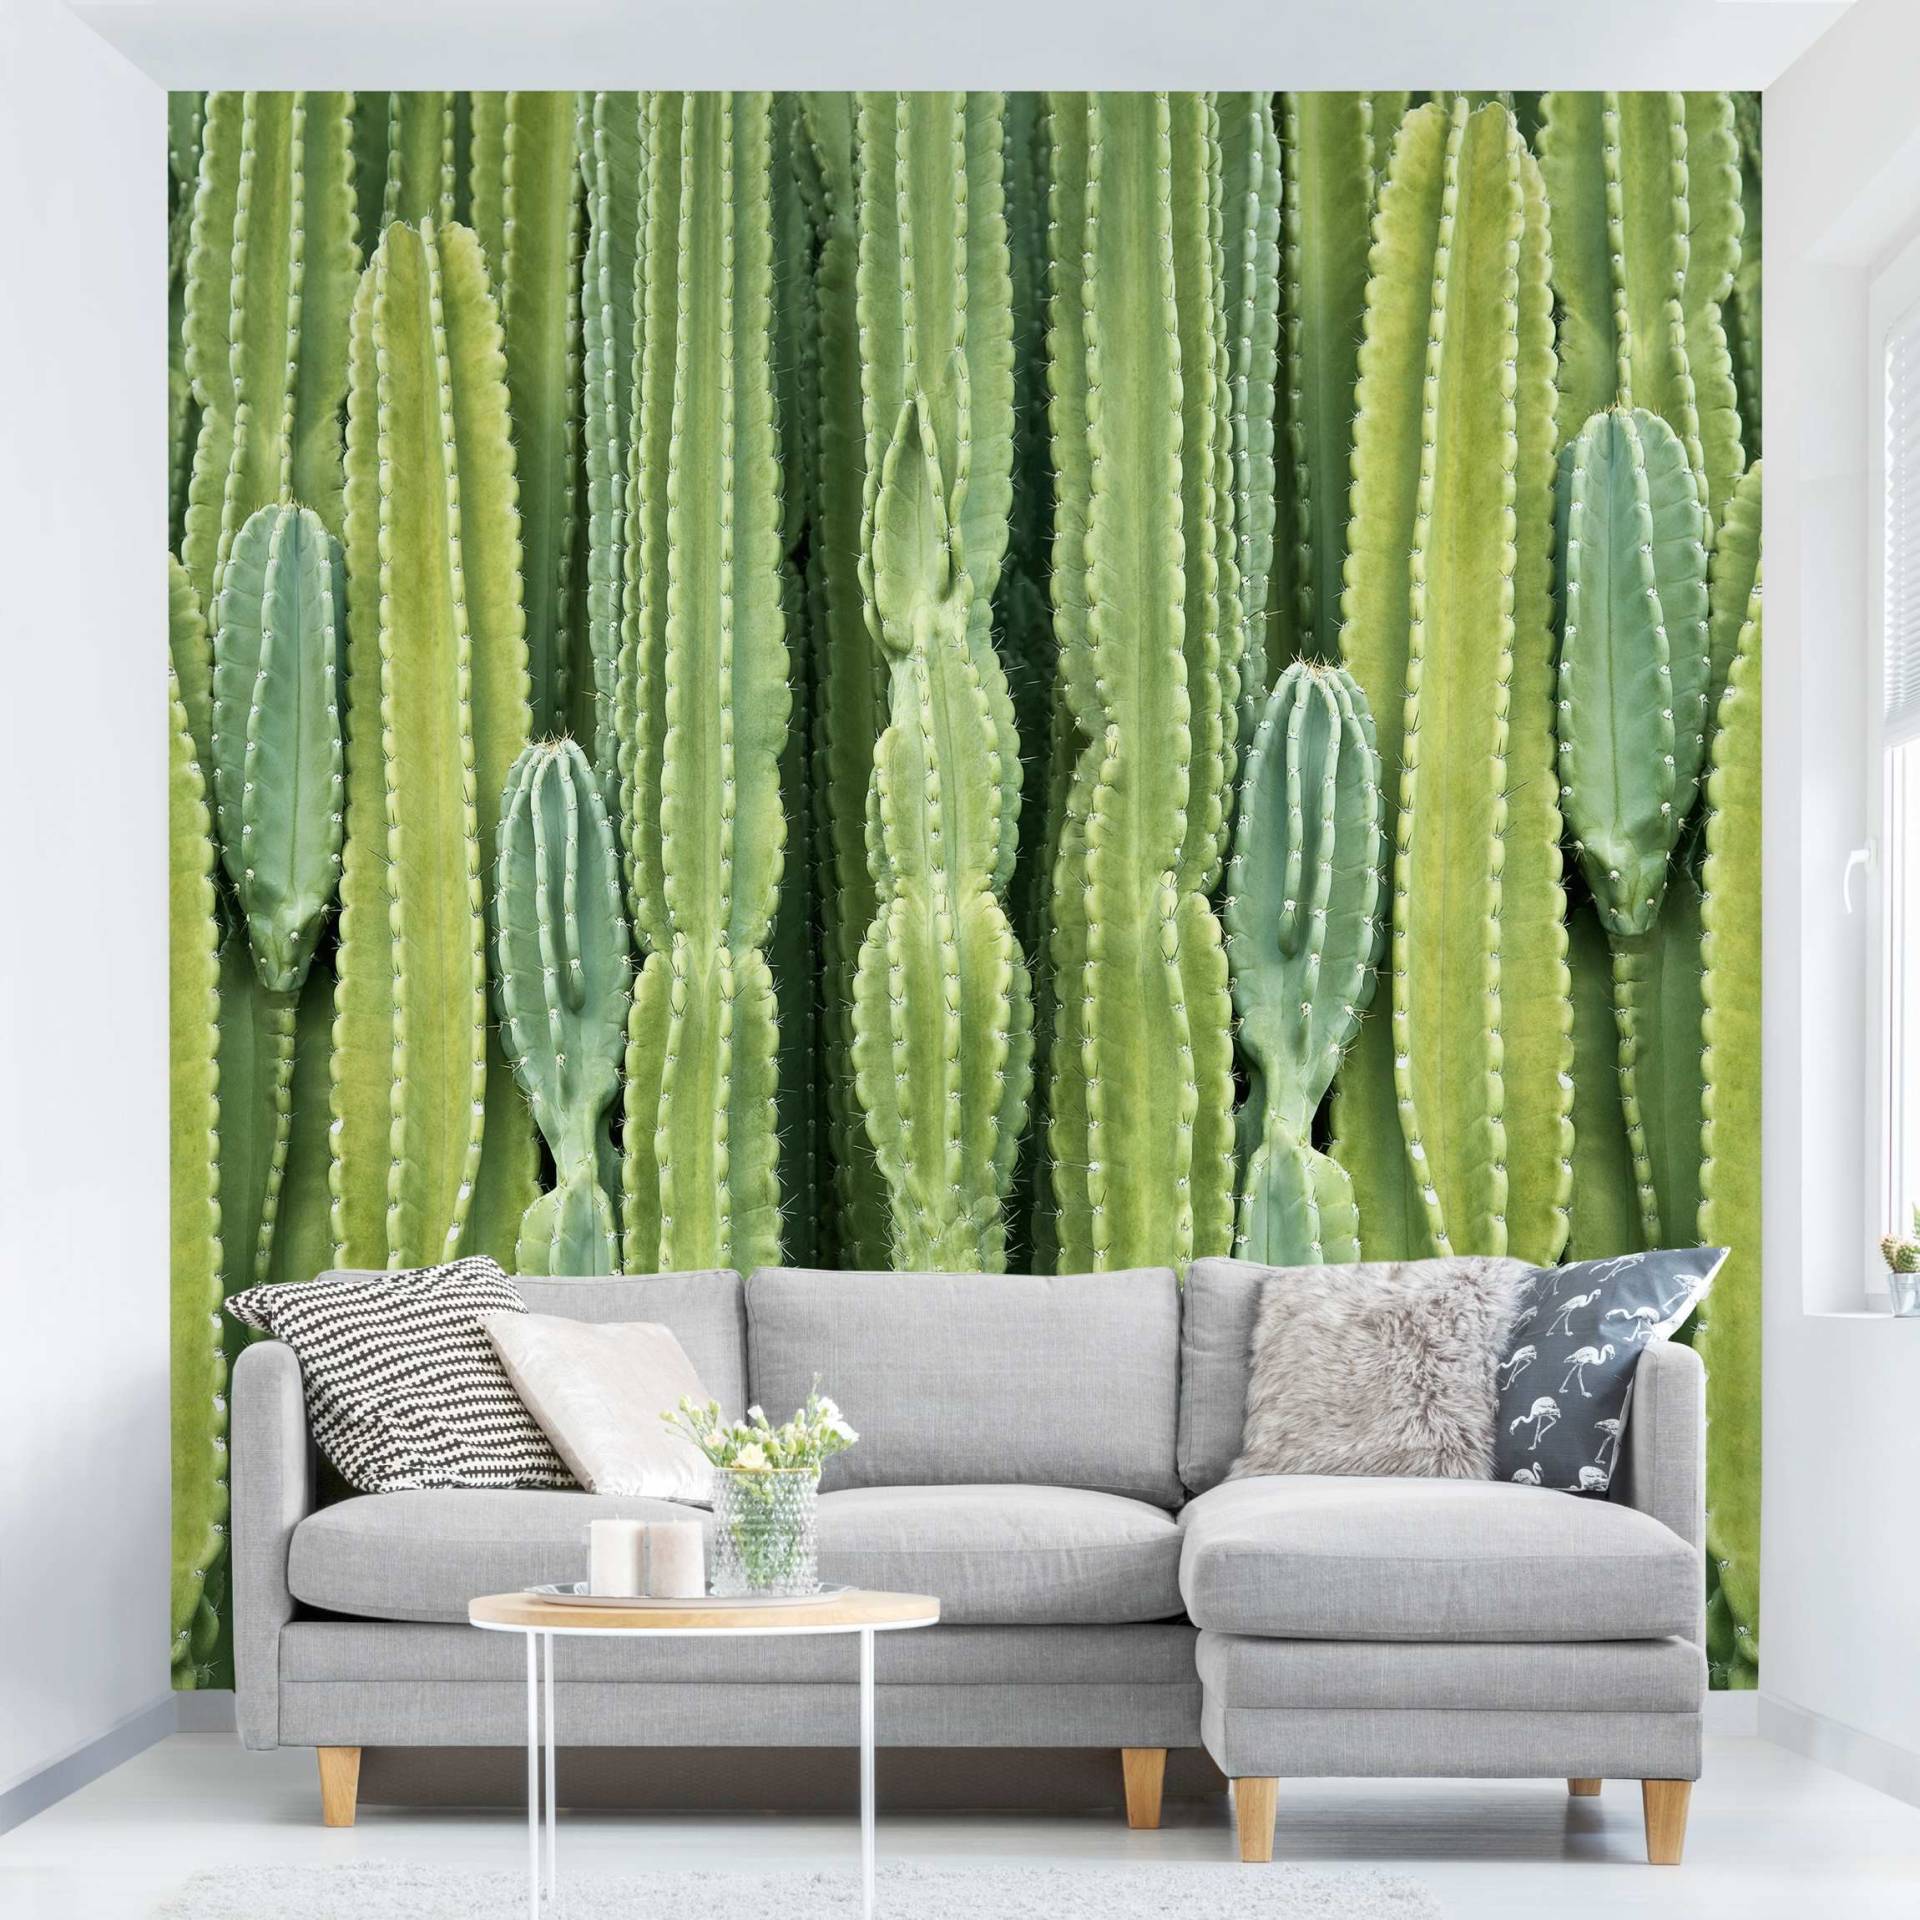 Mustertapete Kaktus Wand von Klebefieber